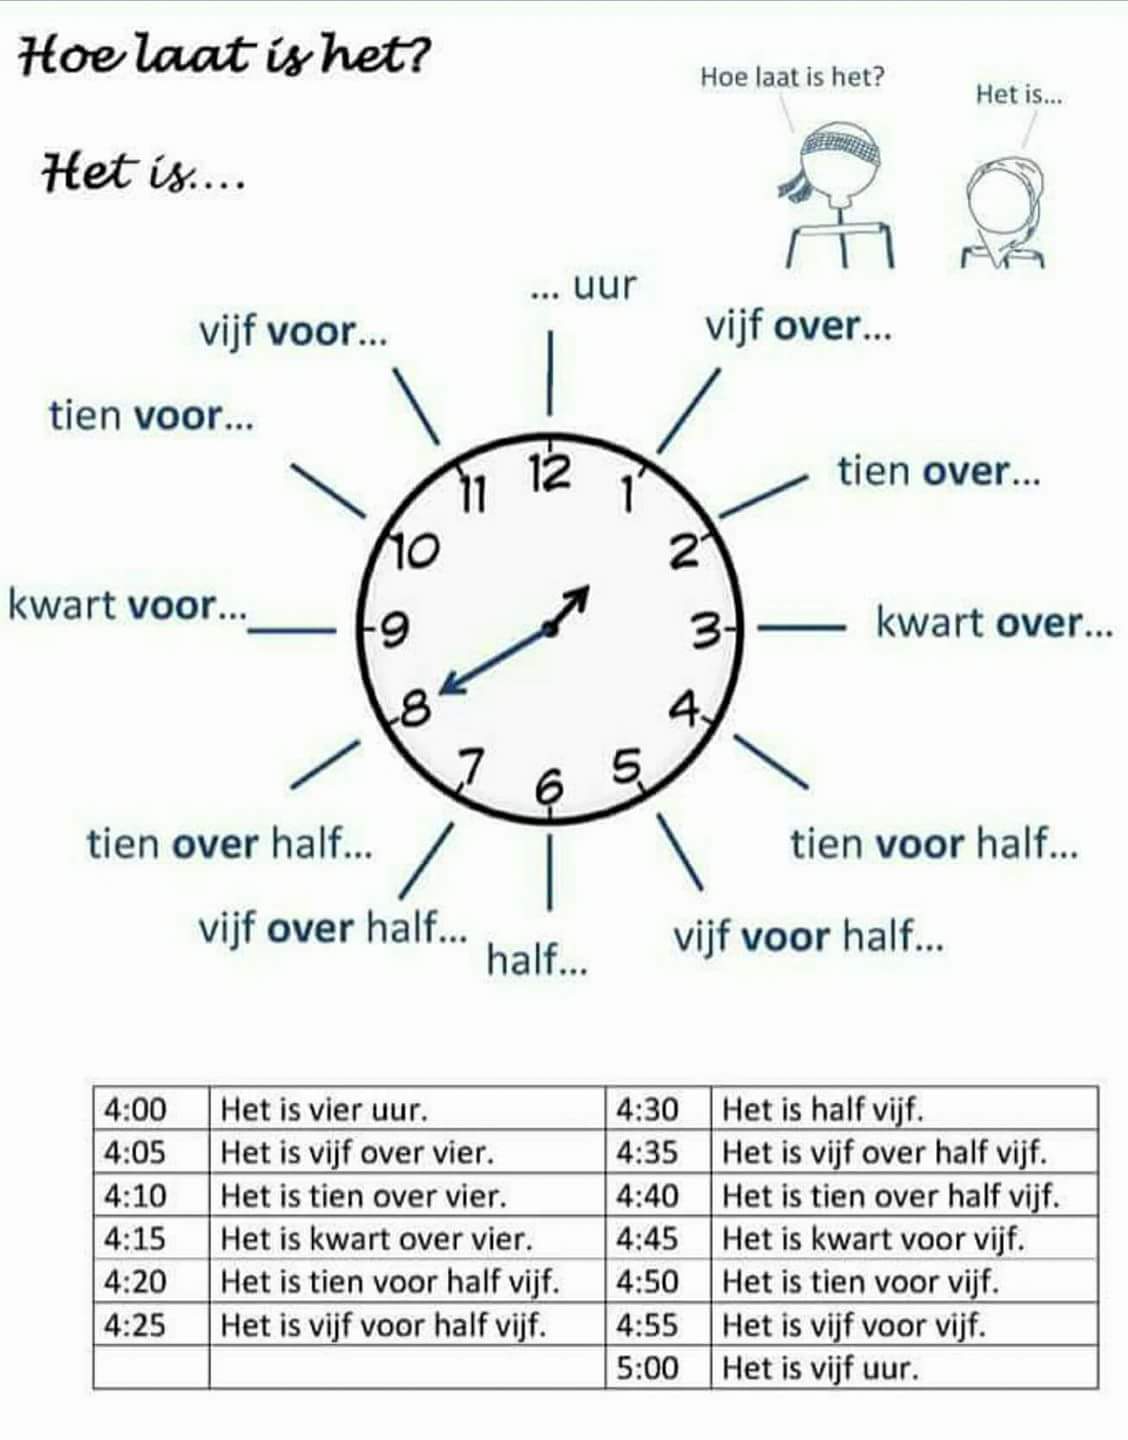 كثير منا يواجه صعوبة في نطق الساعة في اللغة الهولندية